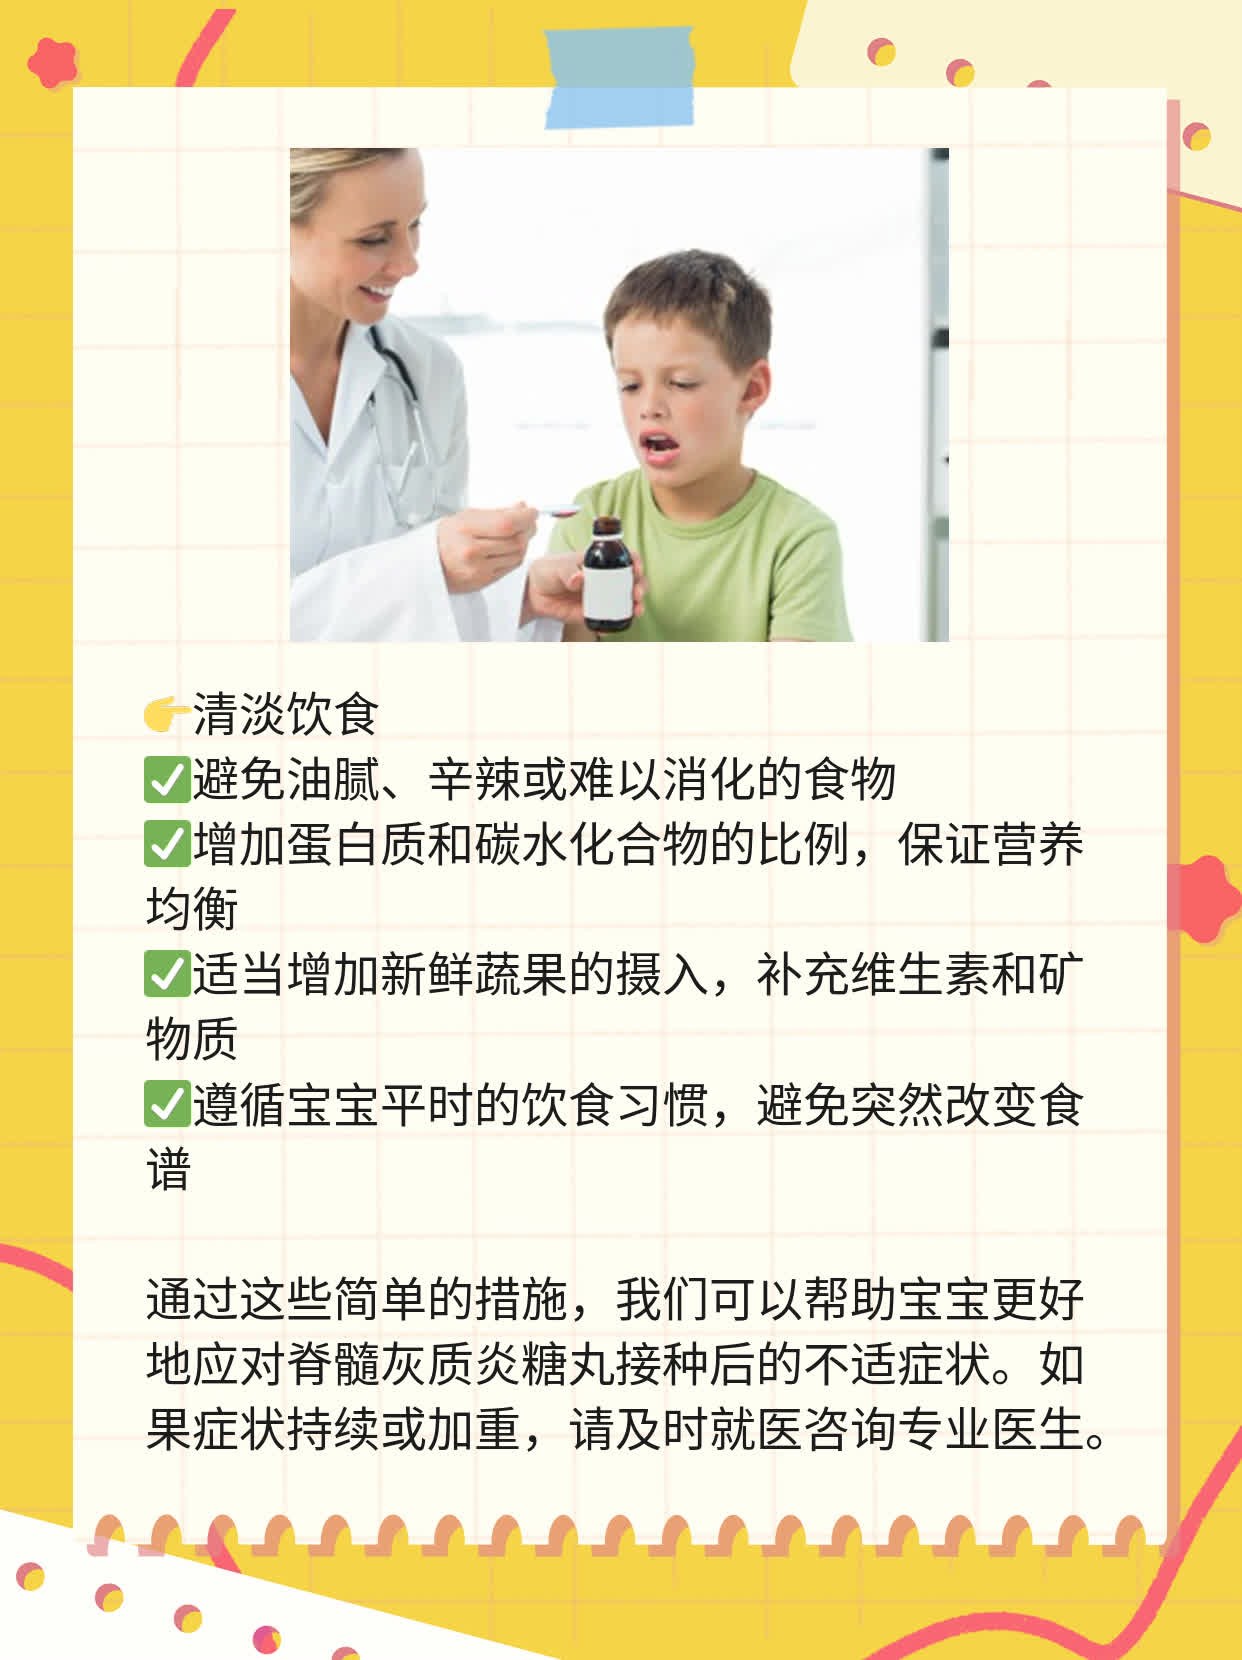 「糖丸后观察」宝宝打完脊灰疫苗后的异常反应指南